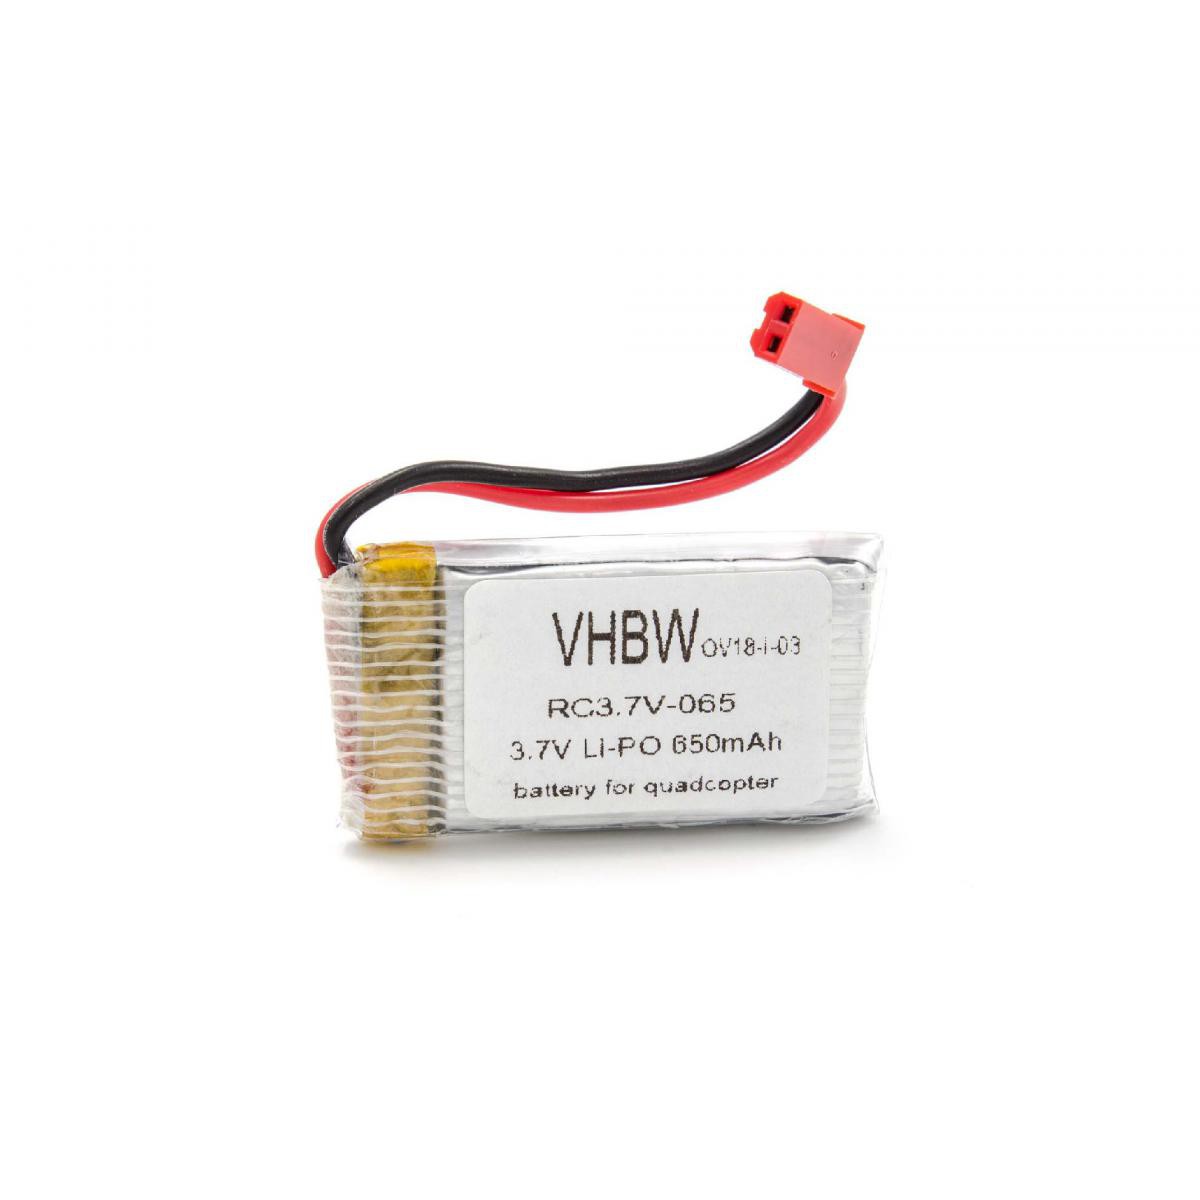 Vhbw - vhbw universal Li-Ion Batterie 650mAh (3.7V) pour modèle réduit par exemple hélicoptère drone, quadriroto. - Accessoires et pièces